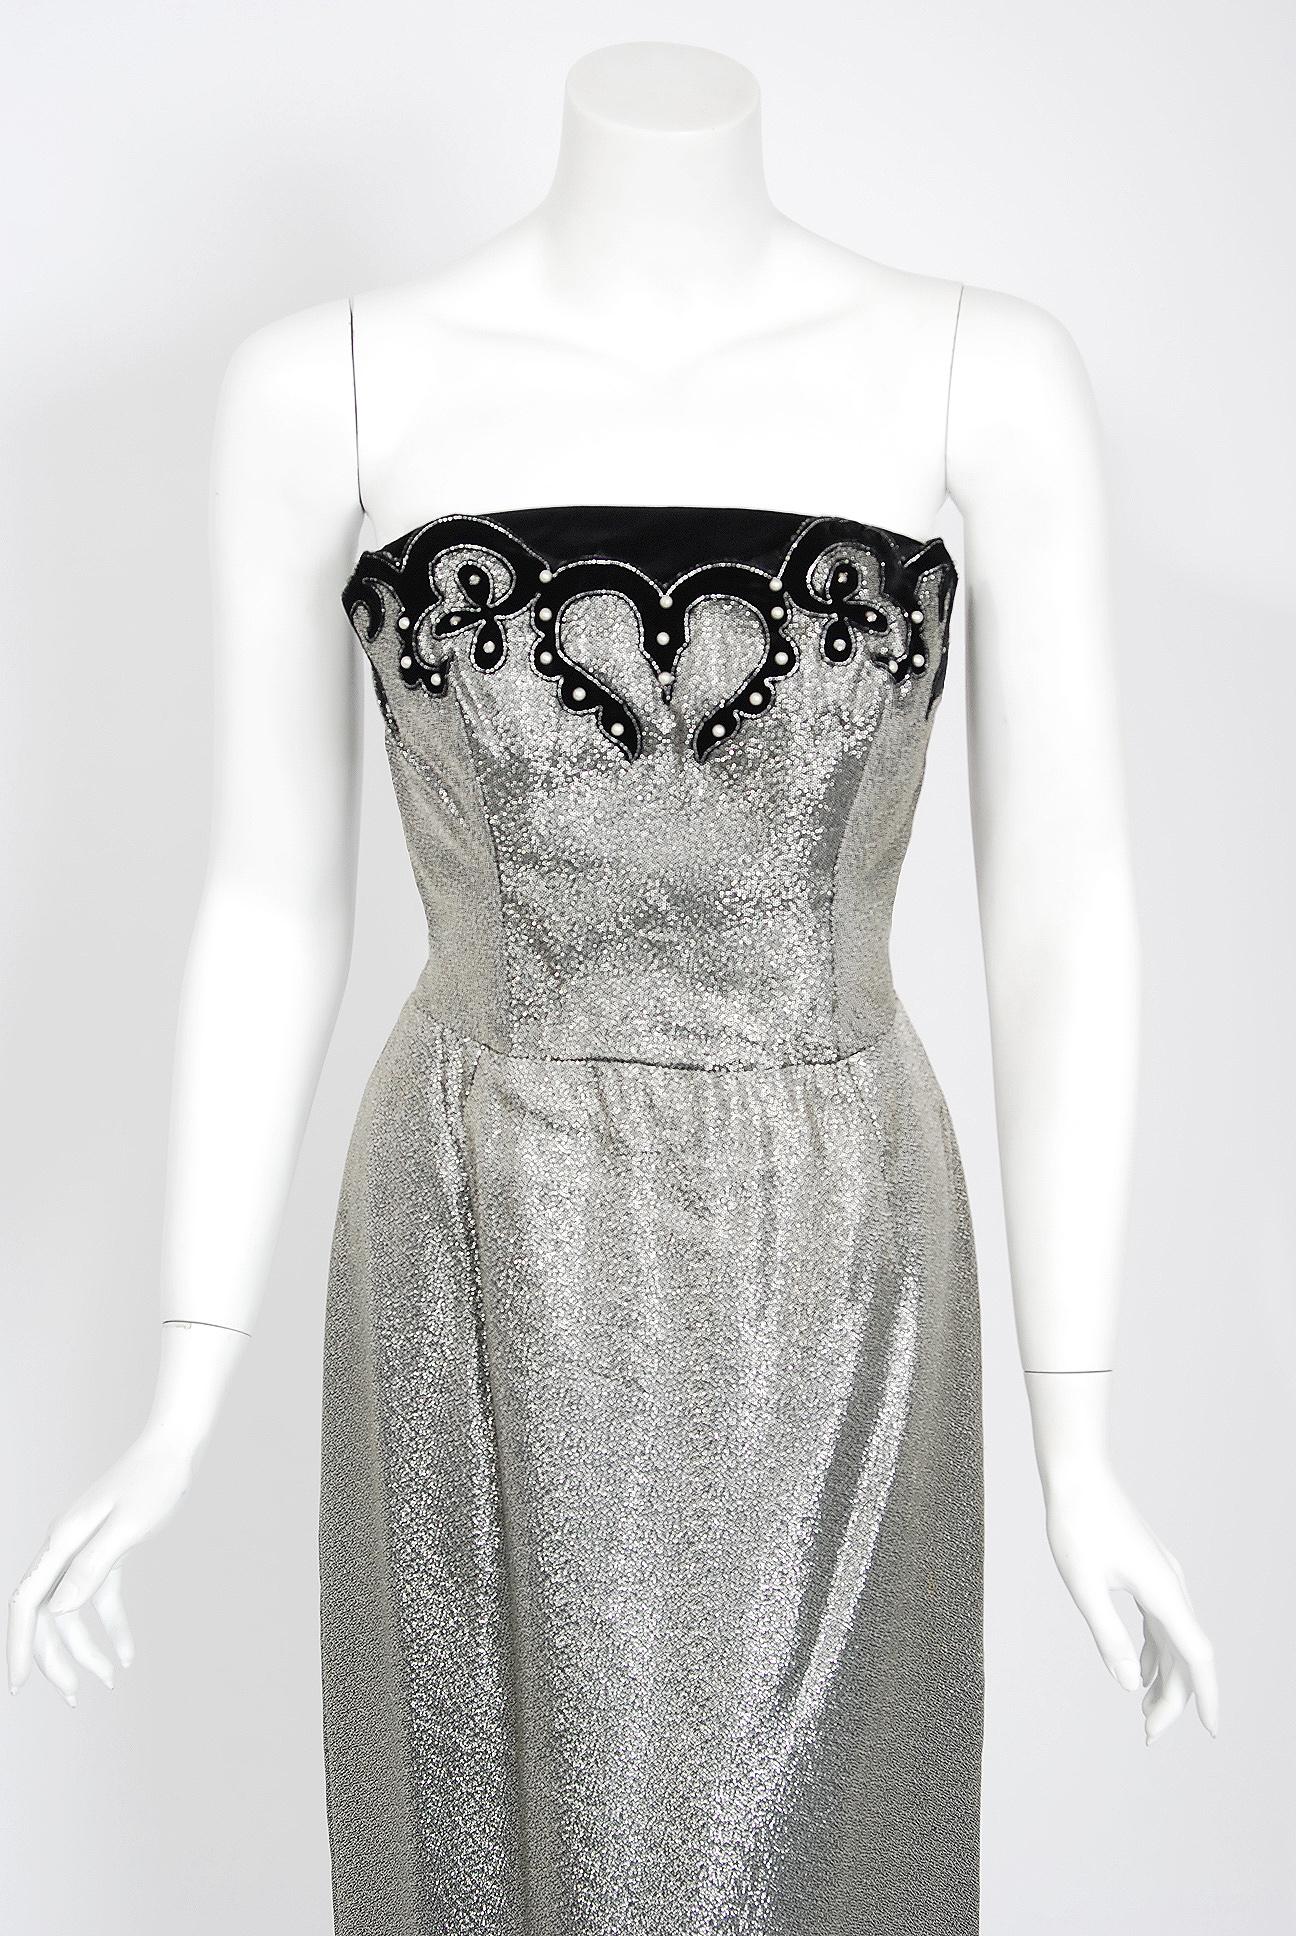 Un ensemble séduisant et très stylisé de robes en lamé argenté étincelant des années 1950 de la célèbre marque Lilli Diamond. La silhouette est celle d'une pin-up classique 